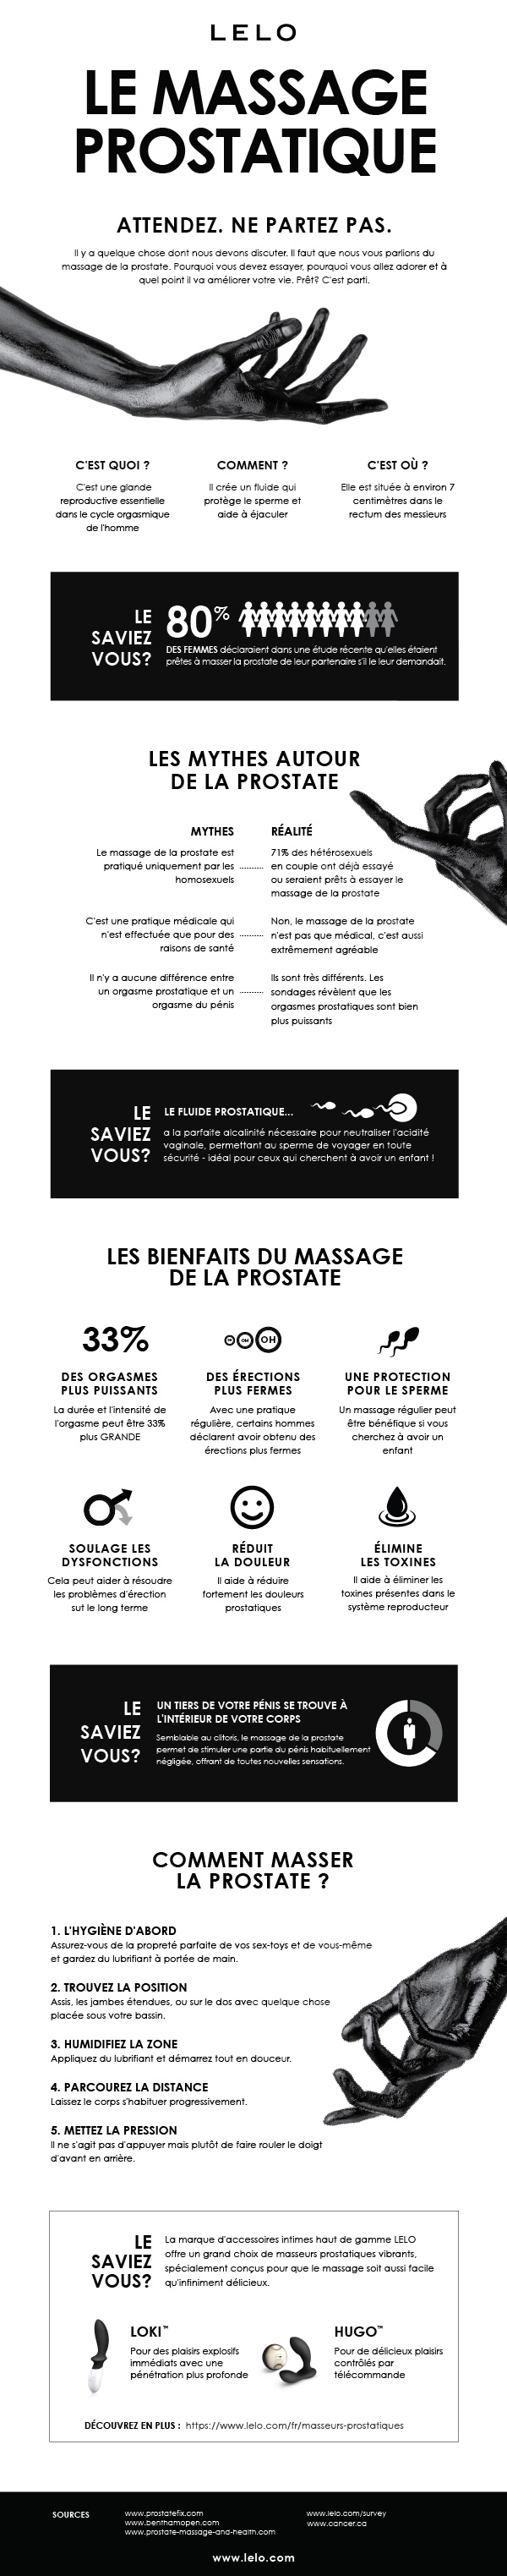 Infographie sur le massage prostatique